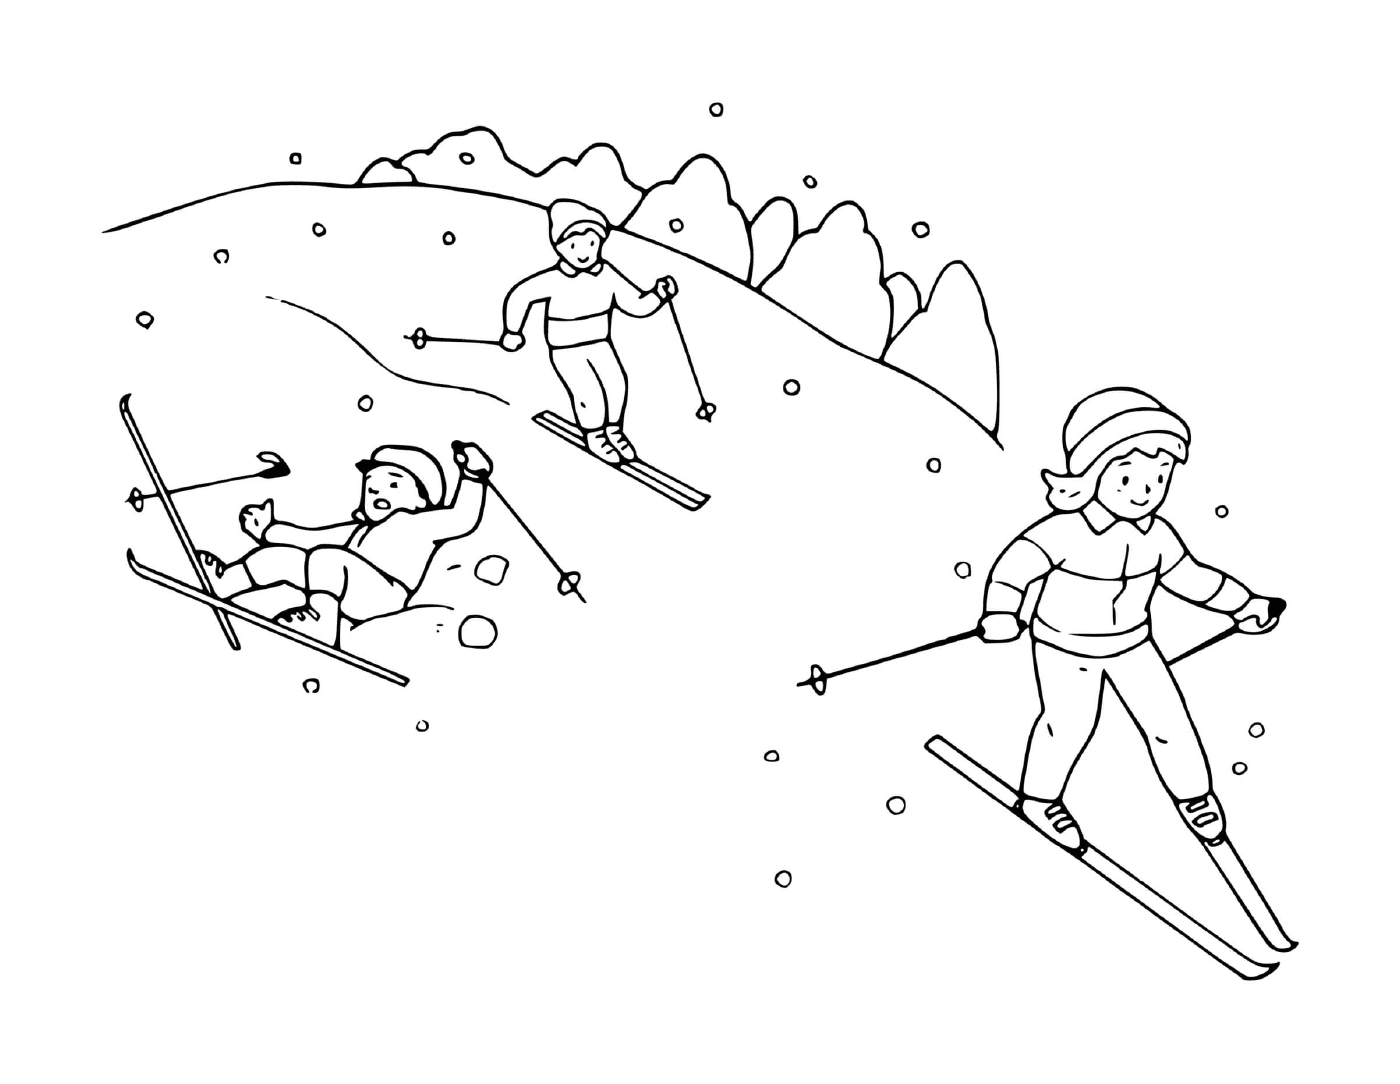  家人一起滑滑雪玩乐 